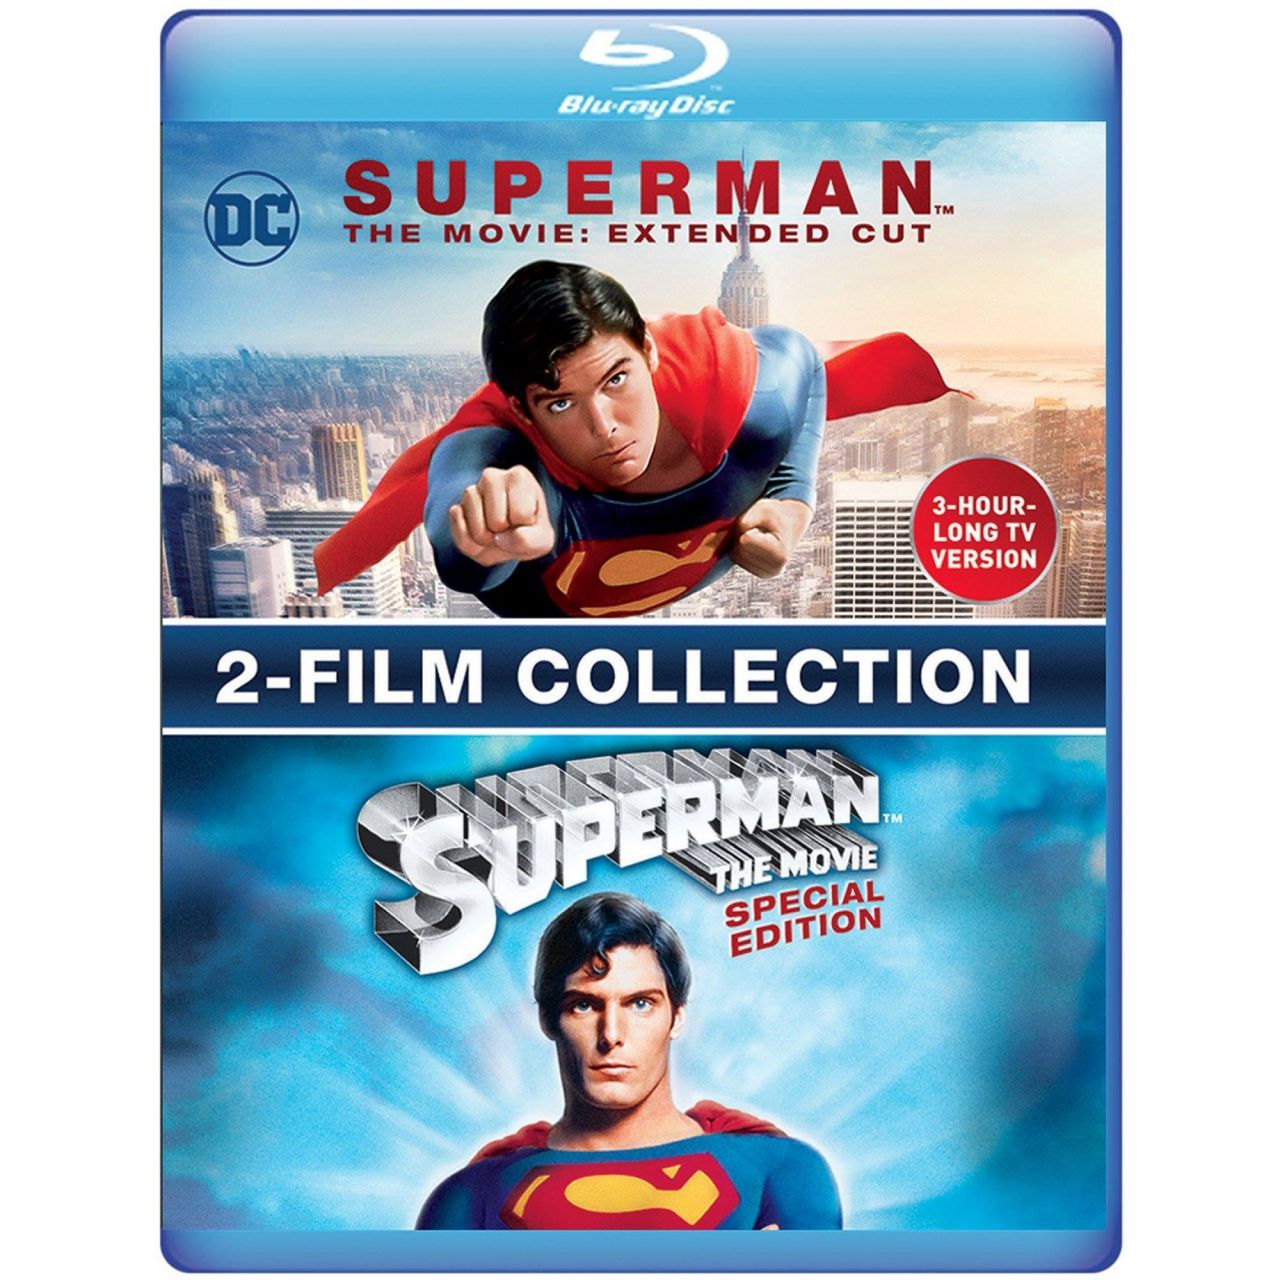 Le film Superman de Richard Donner ressort dans une version longue de 3h